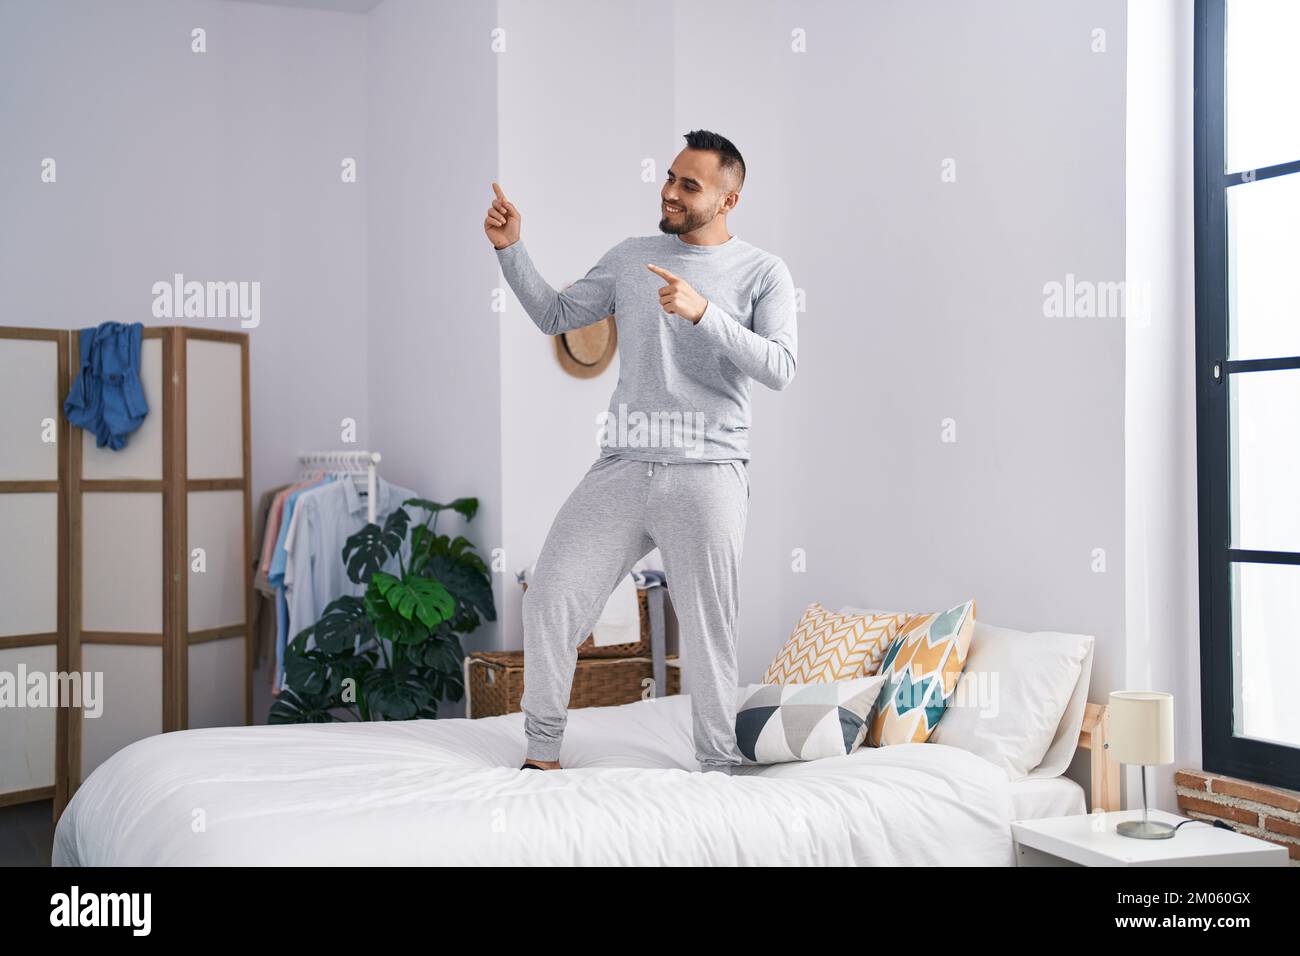 Junger lateinamerikanischer Mann, der im Bett steht und im Schlafzimmer  tanzt Stockfotografie - Alamy